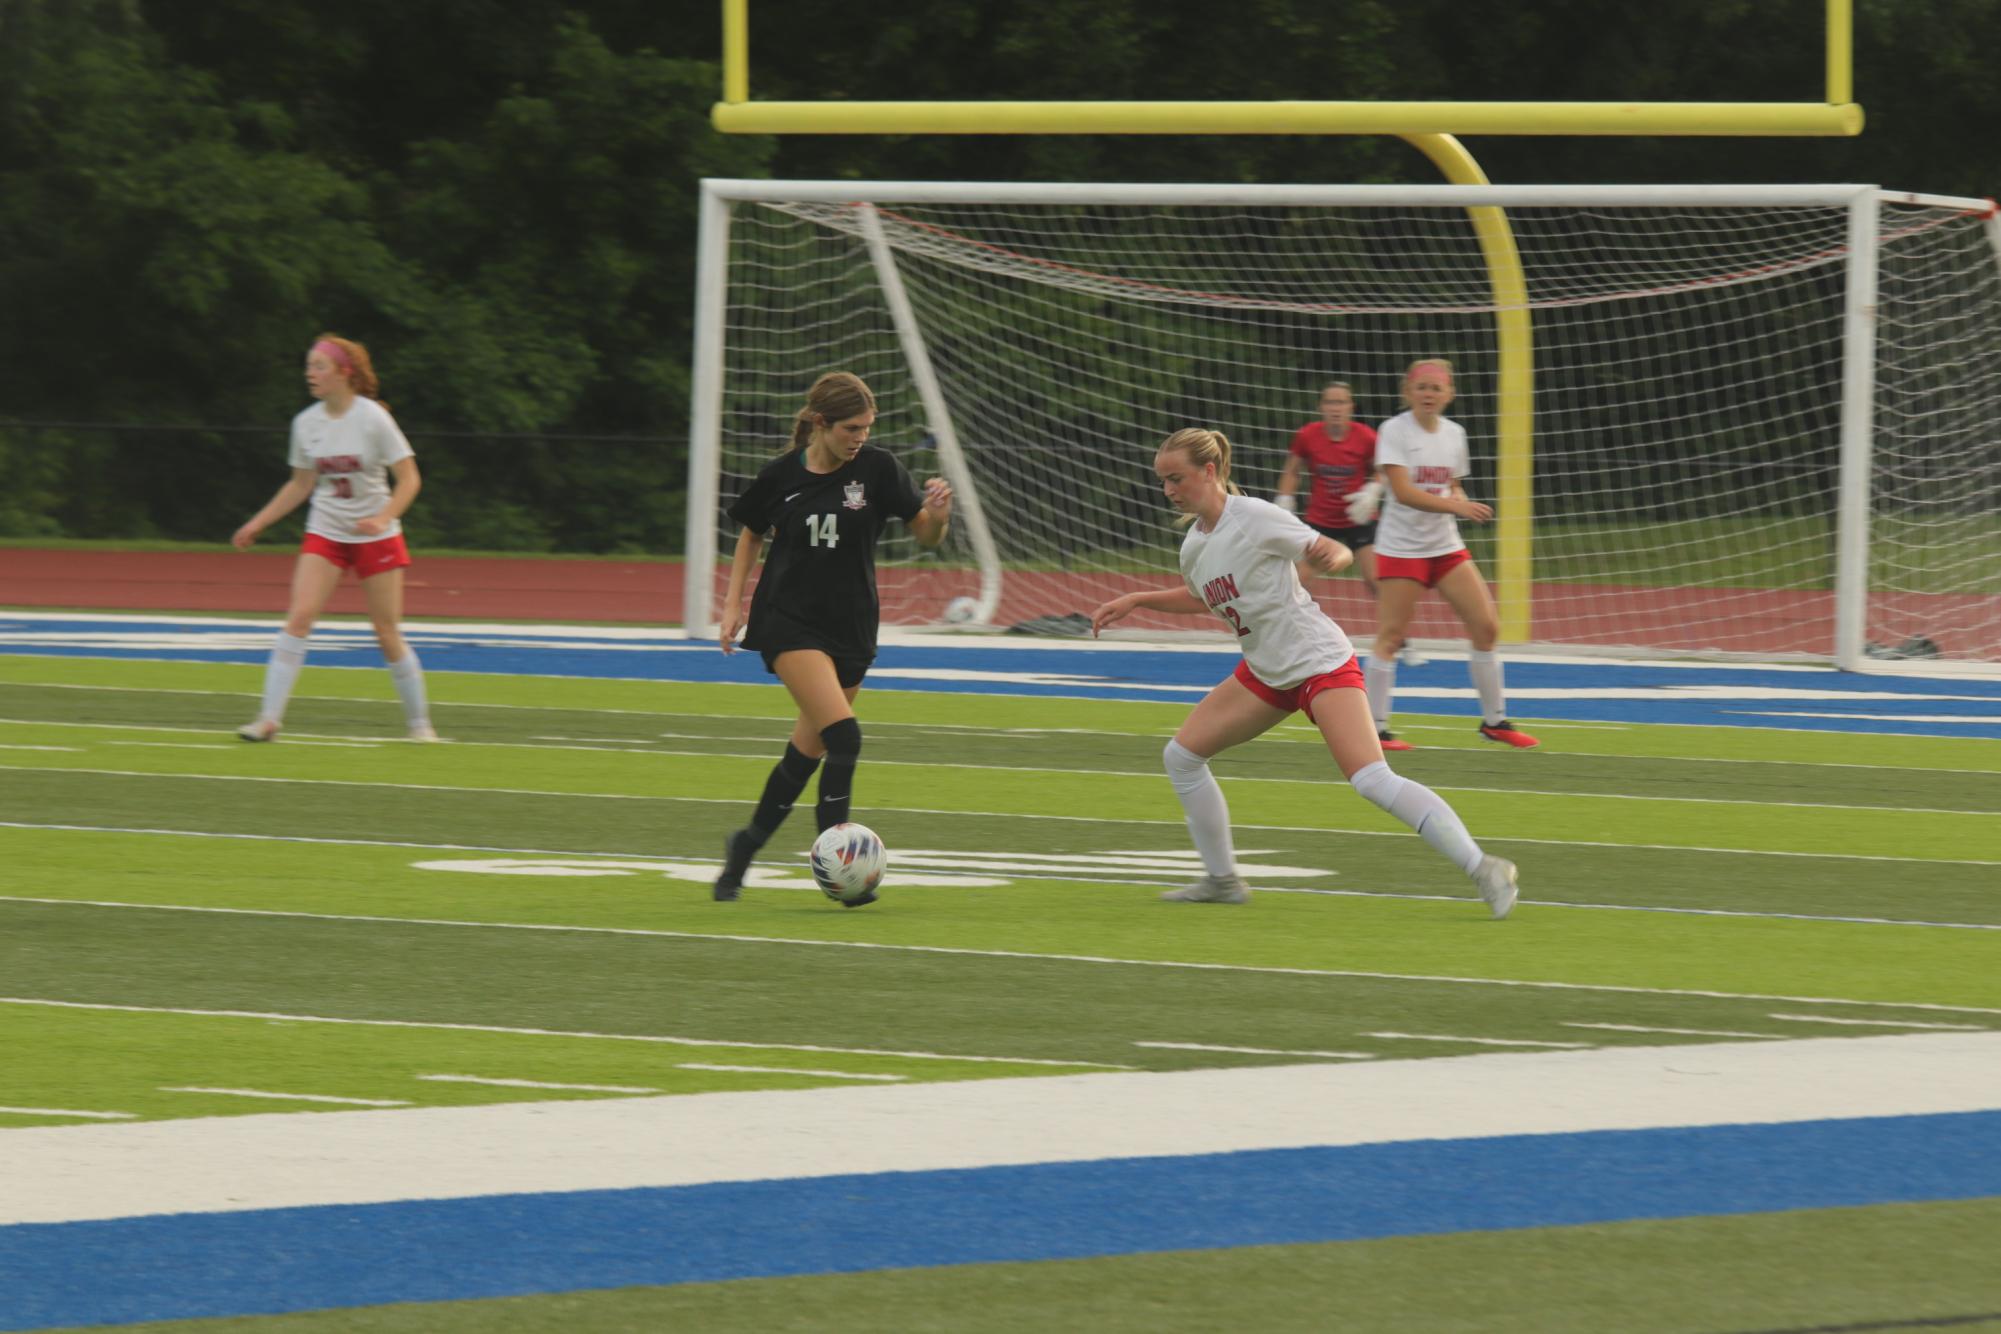 Senior Abby Larocque dribbles the ball towards the goal while avoiding the opposing team.